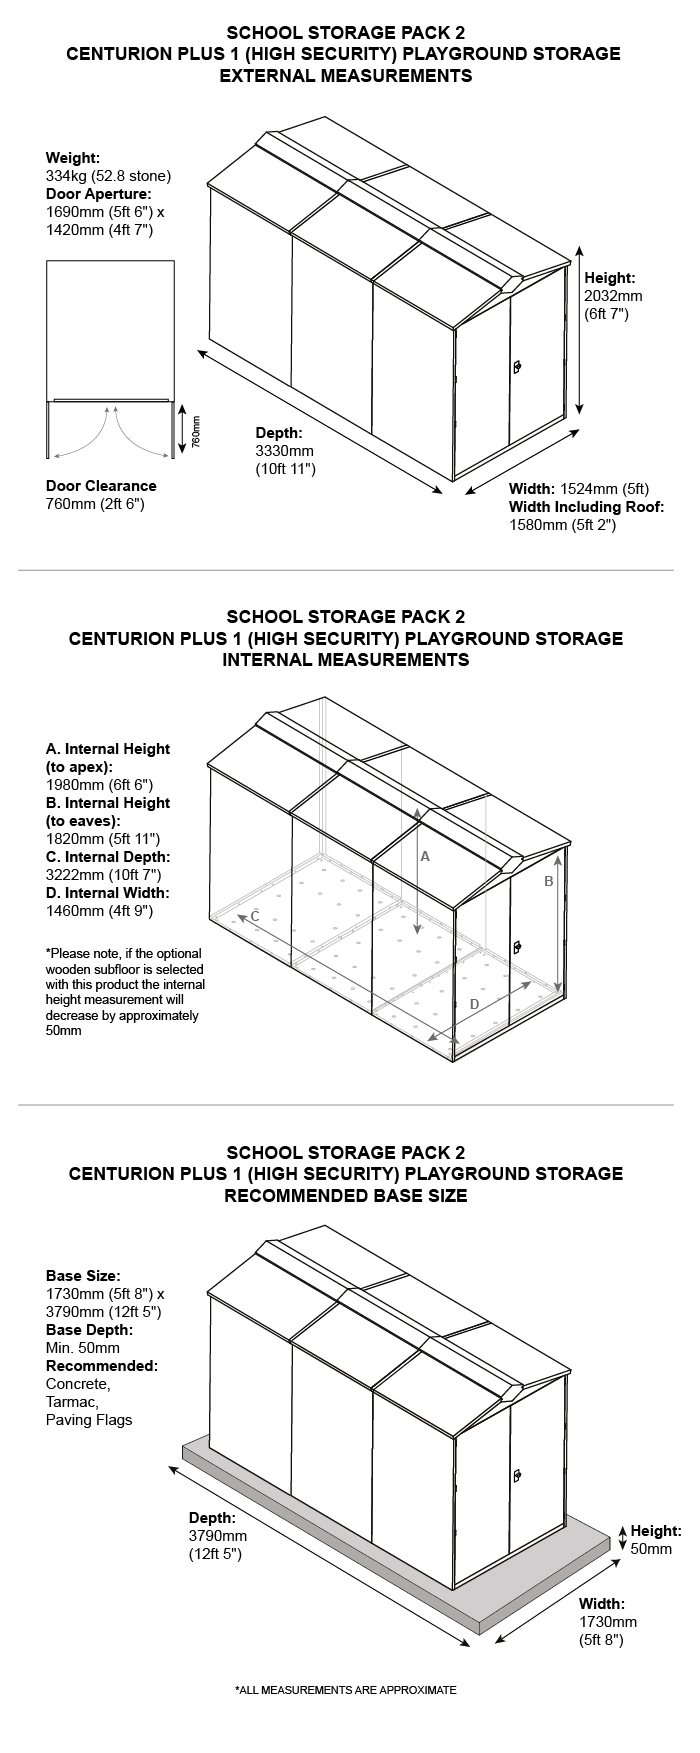 School Storage Pack 2 Dimensions